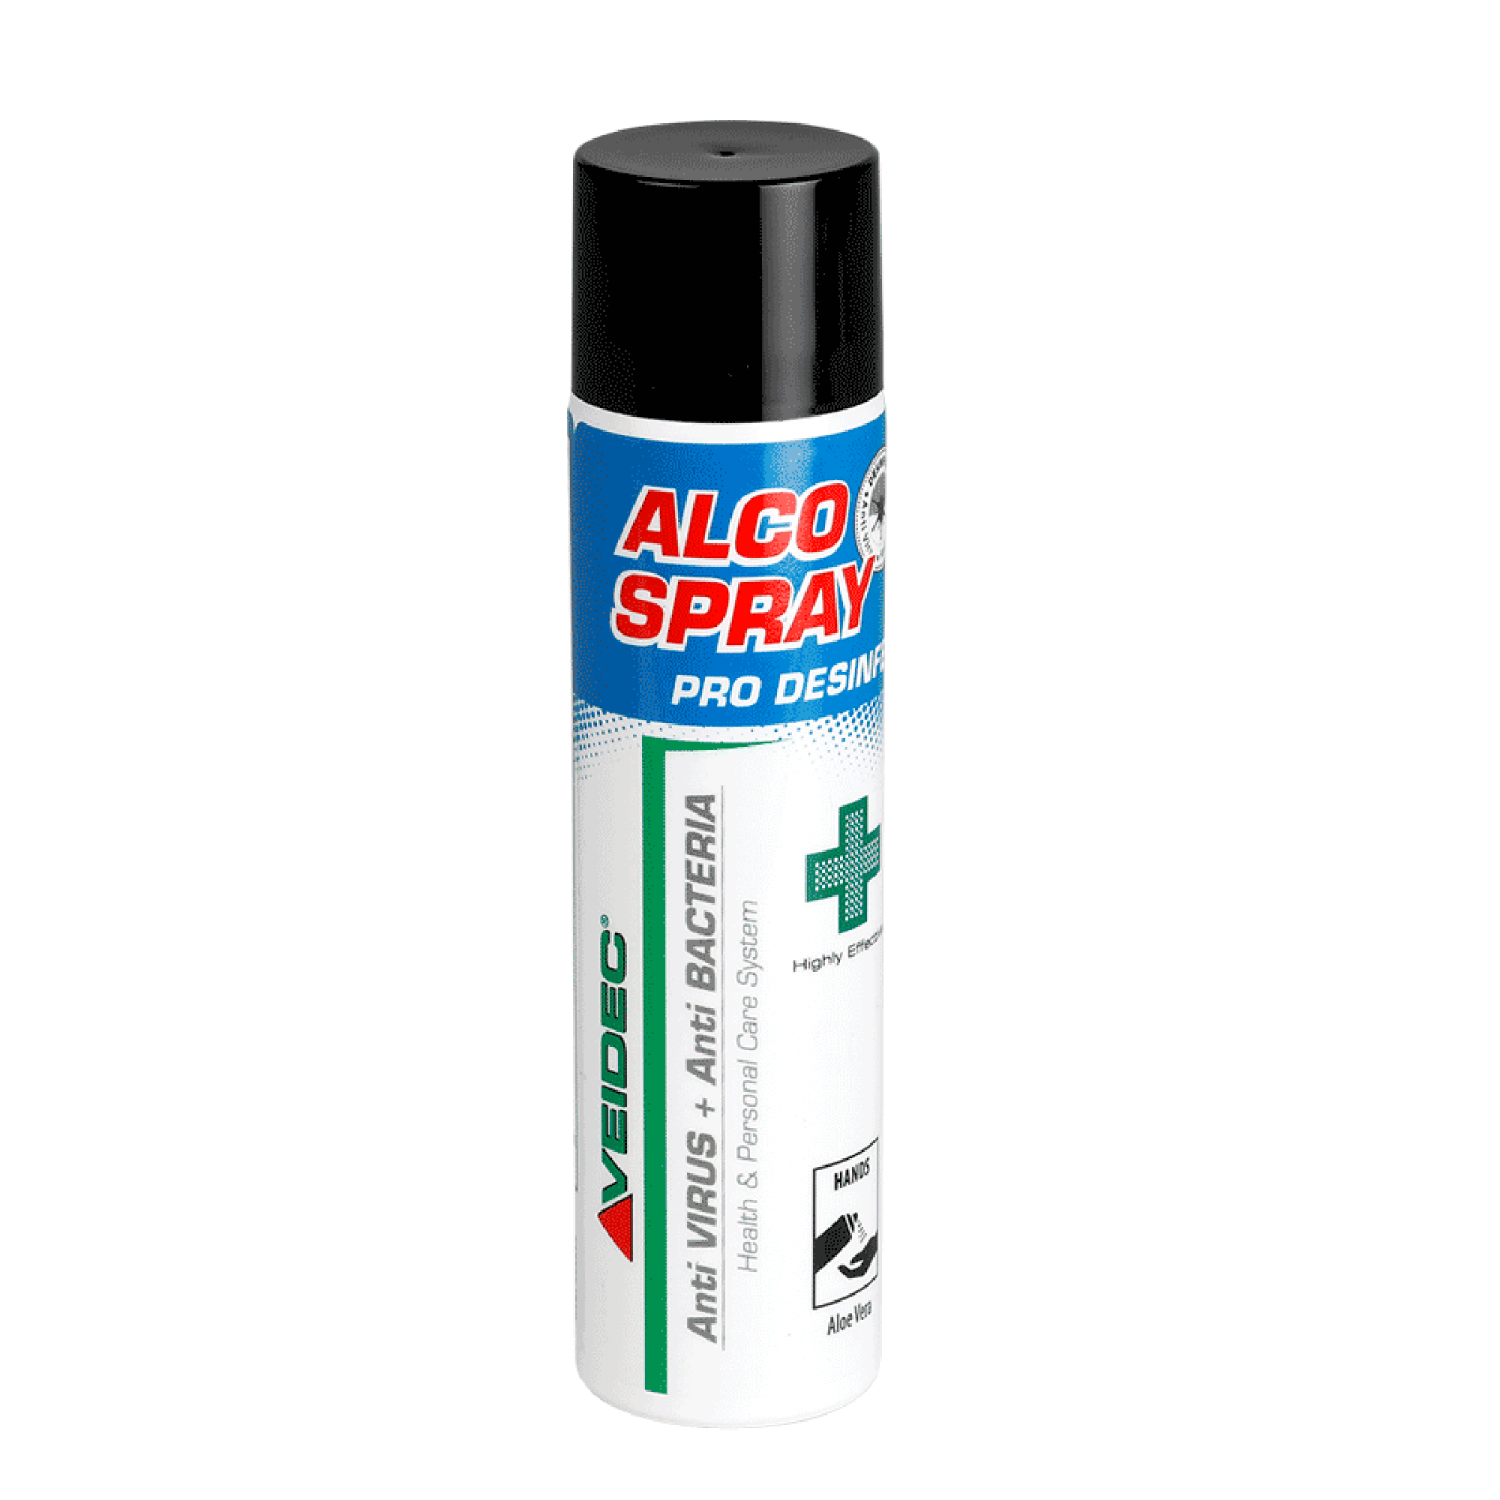 Veidec ALCO Spray 500ml